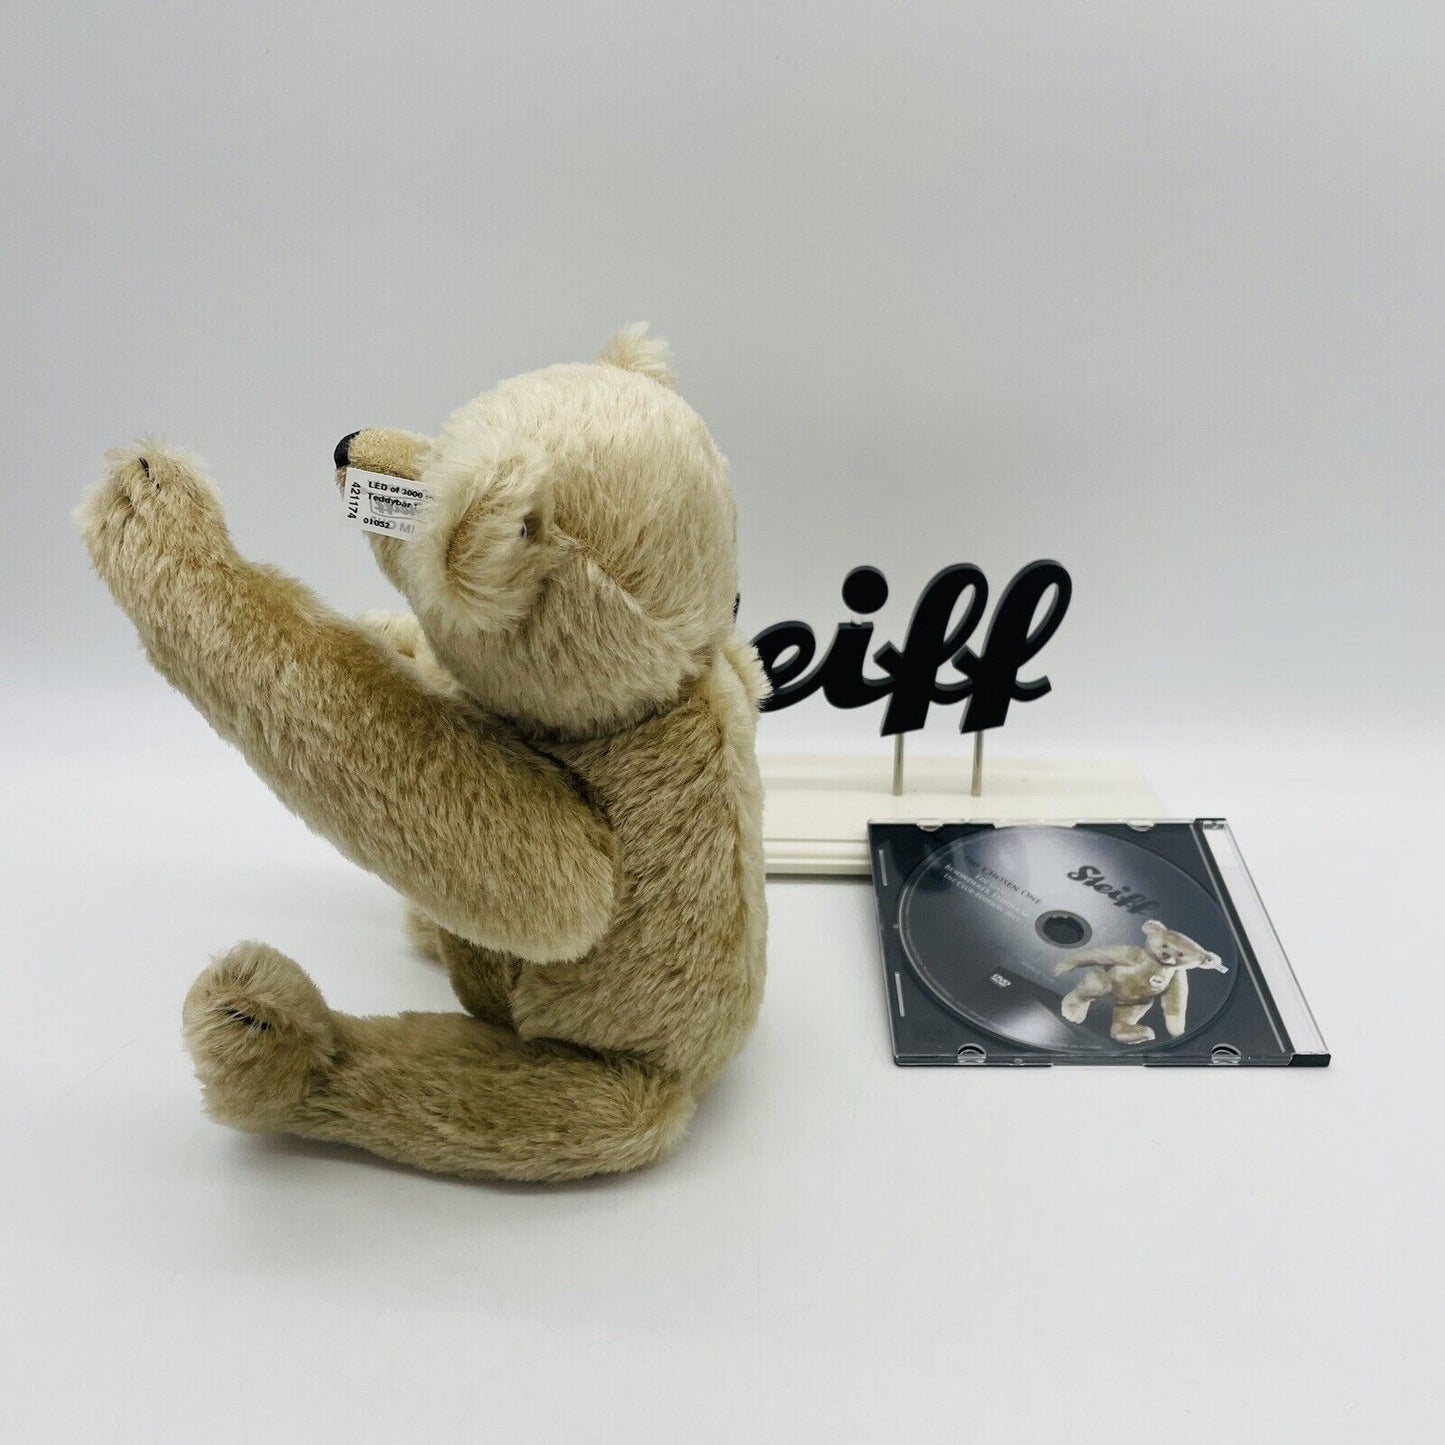 Steiff Teddybär Replica 1911 421174 aus 2011 limitiert 3000 32 cm Mohair mit DVD